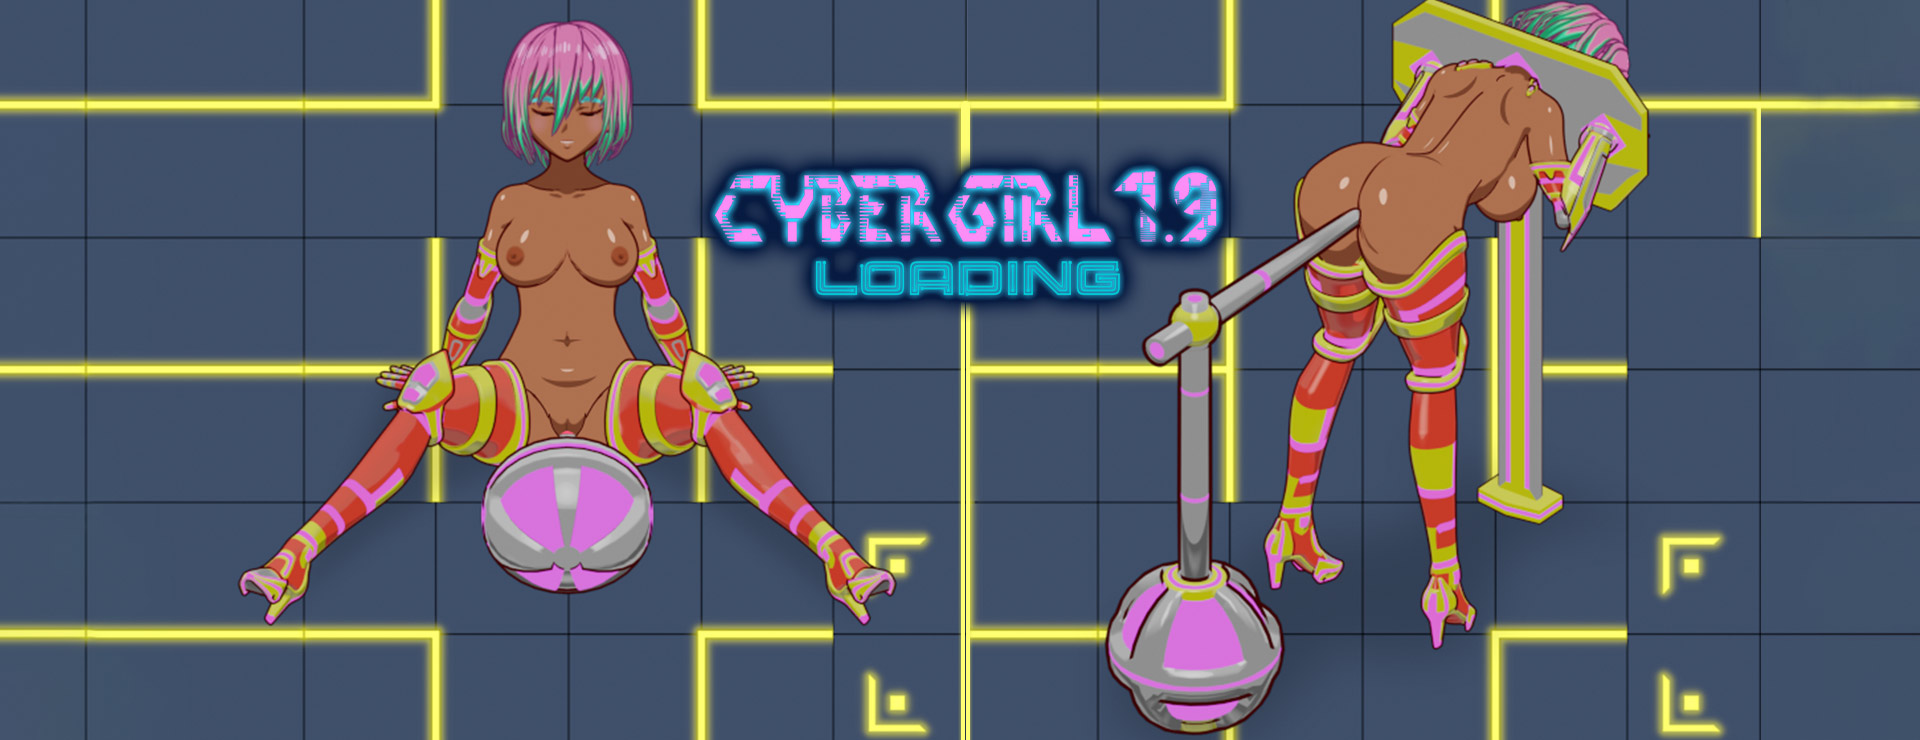 Cyber Girl 1.9 LOADING - Przygodowa akcji Gra